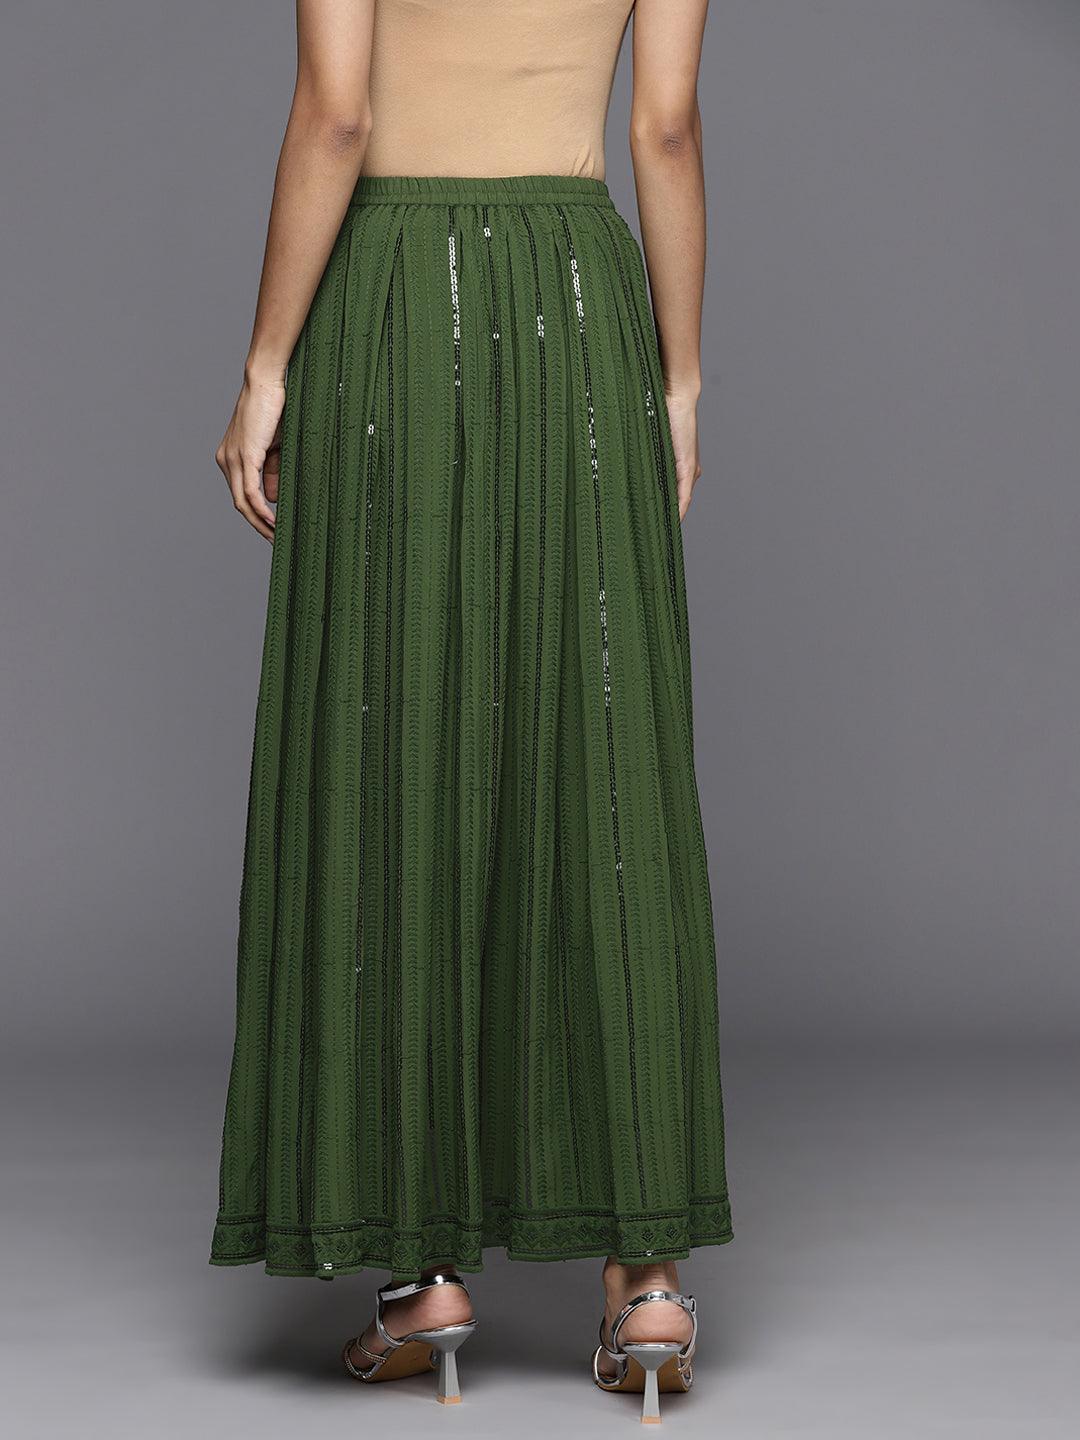 Green Embellished Rayon Skirts - Libas